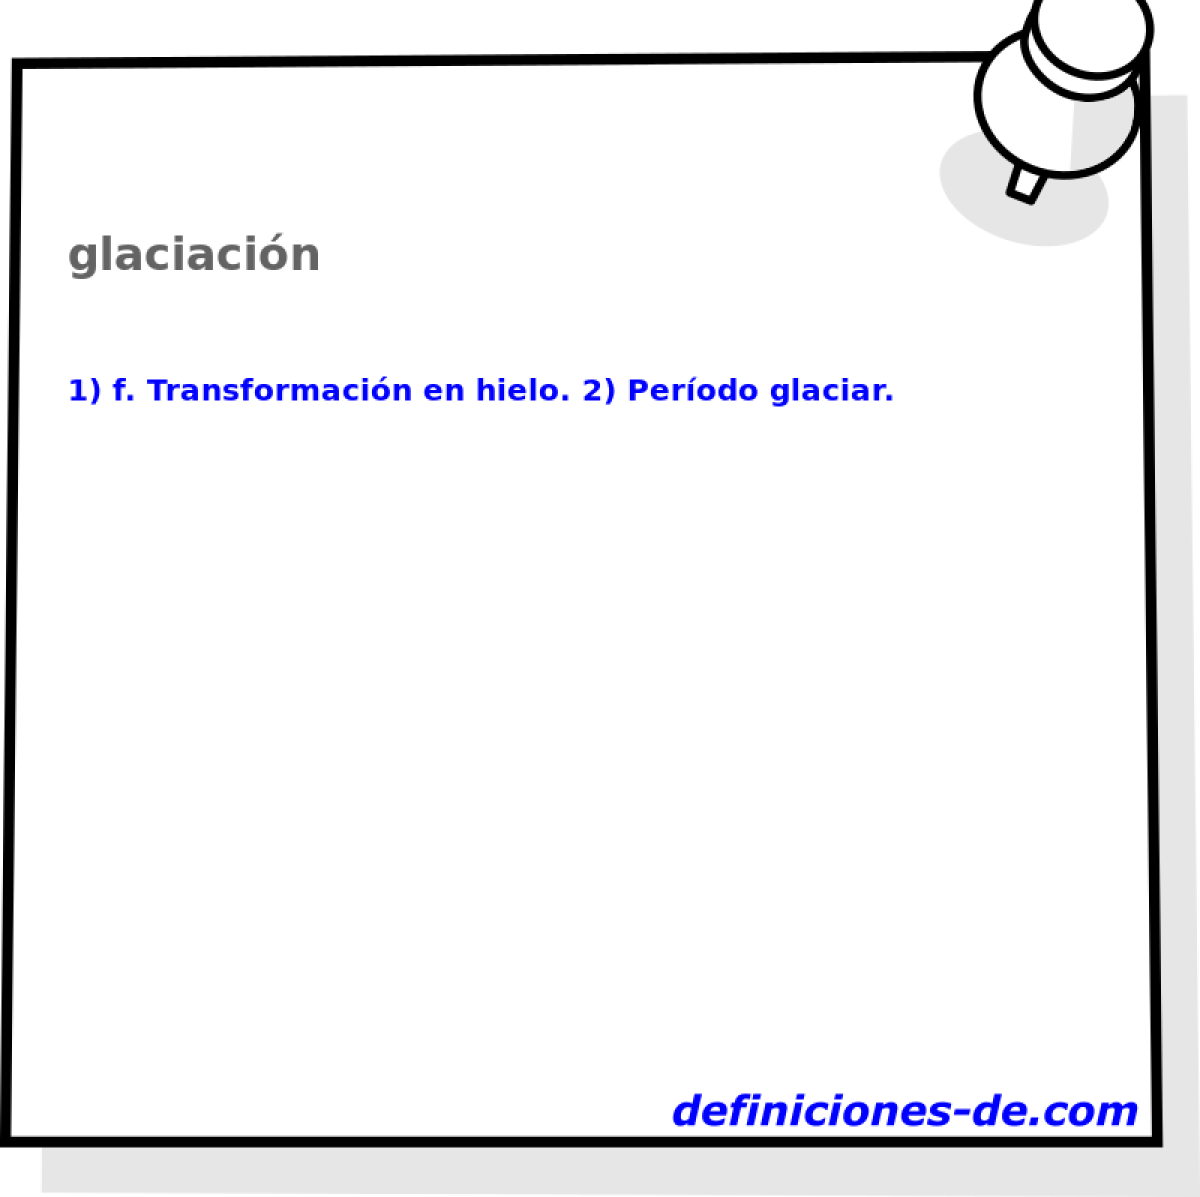 glaciacin 